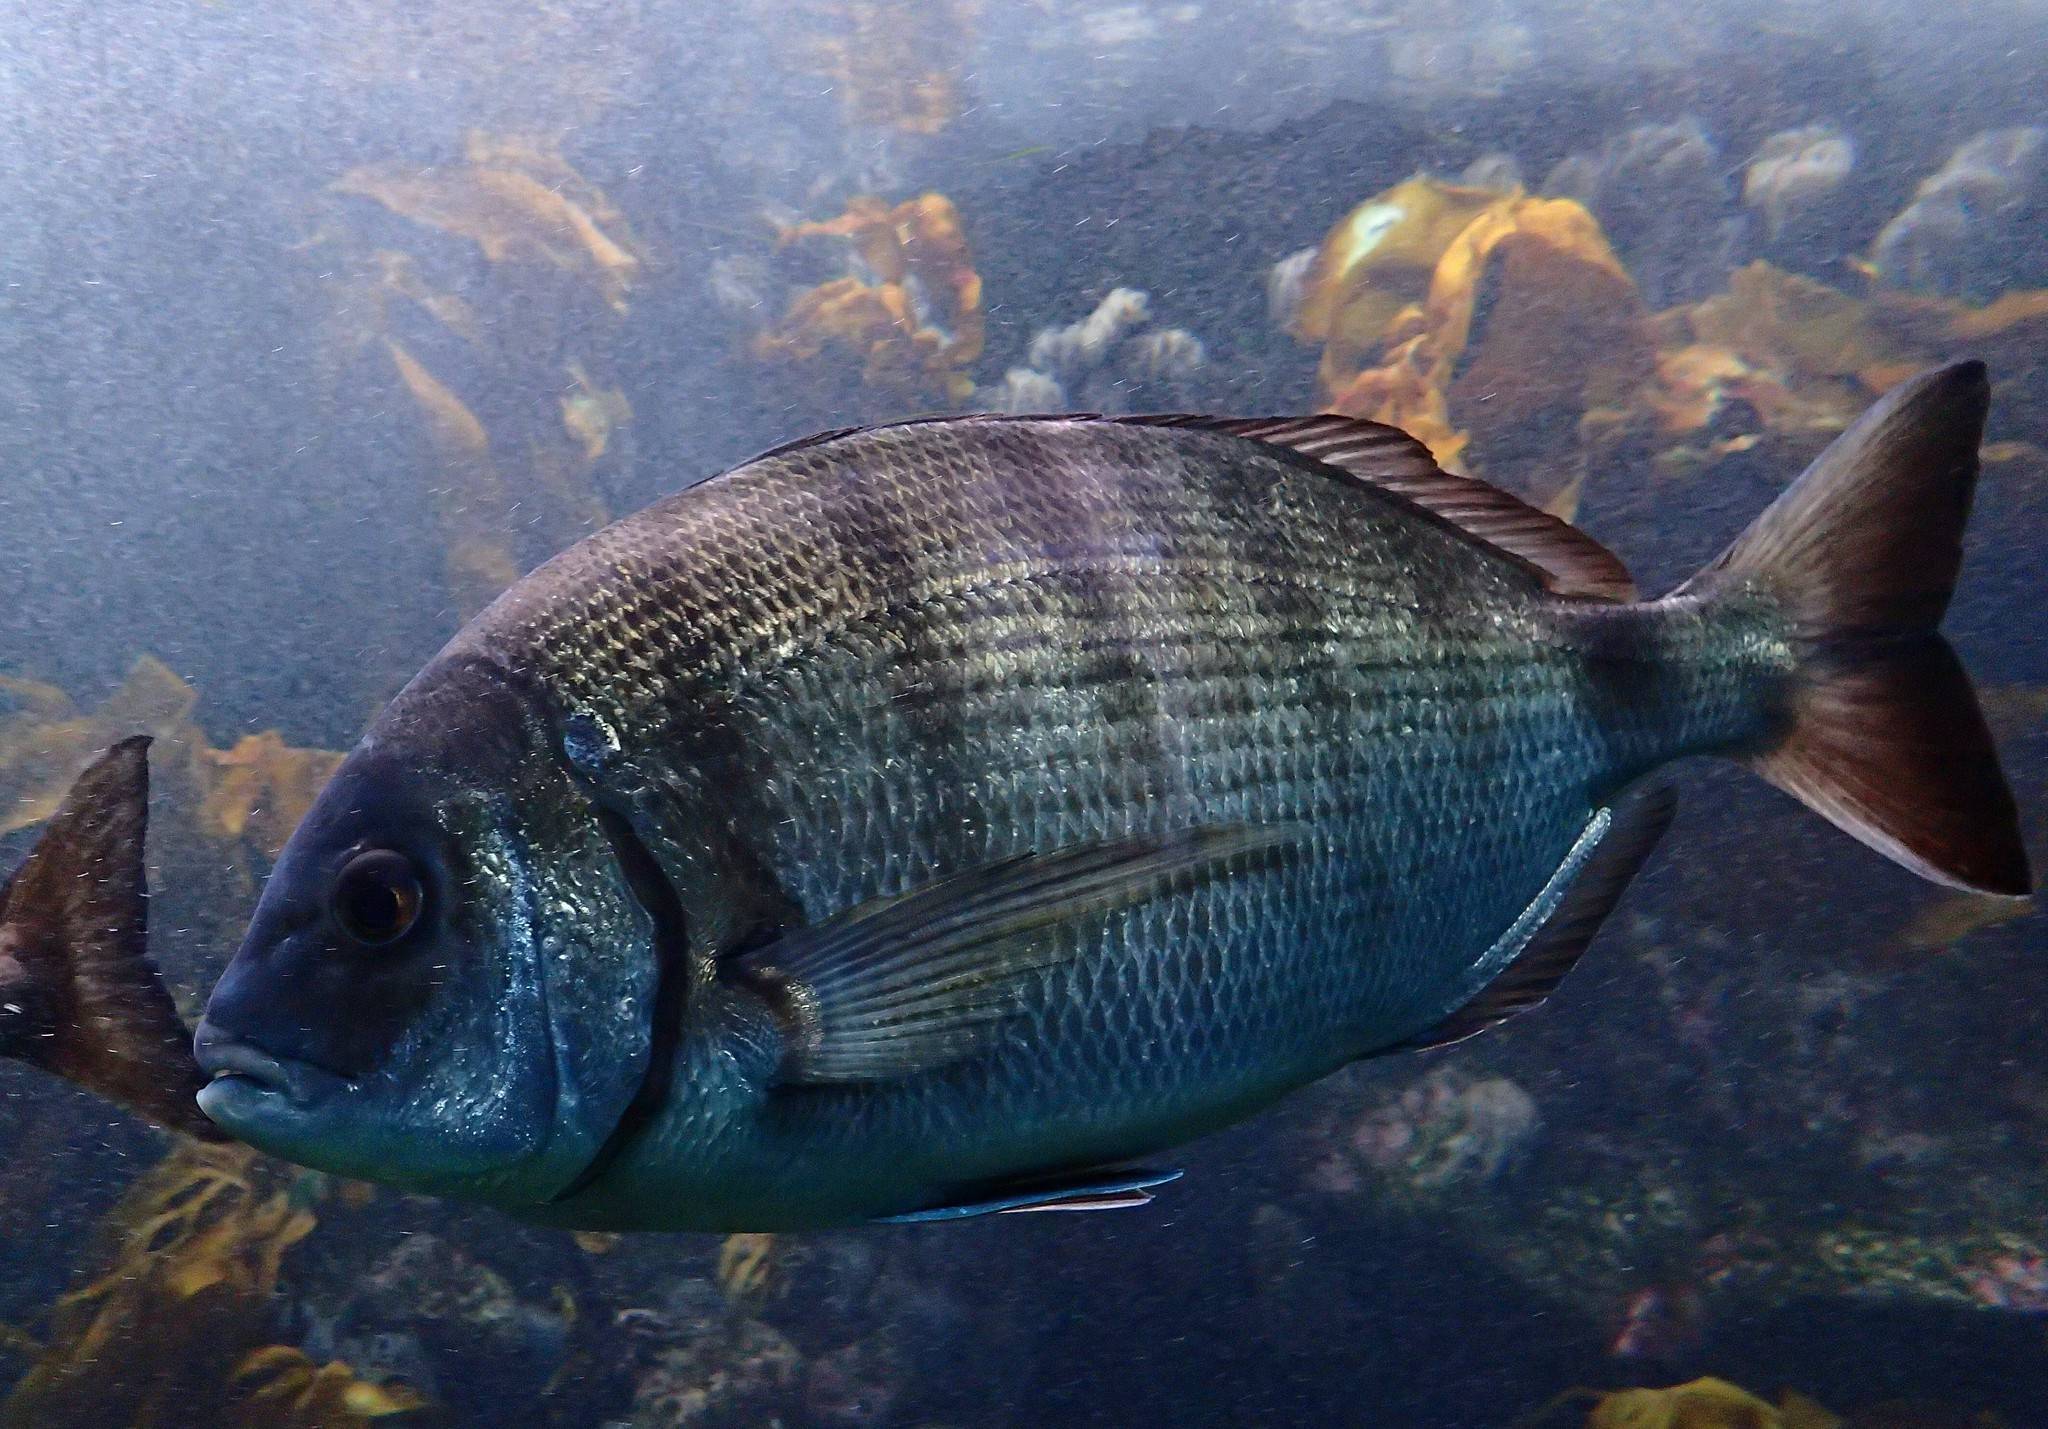 Морской карась-ласкирь фото и описание – каталог рыб, смотреть онлайн